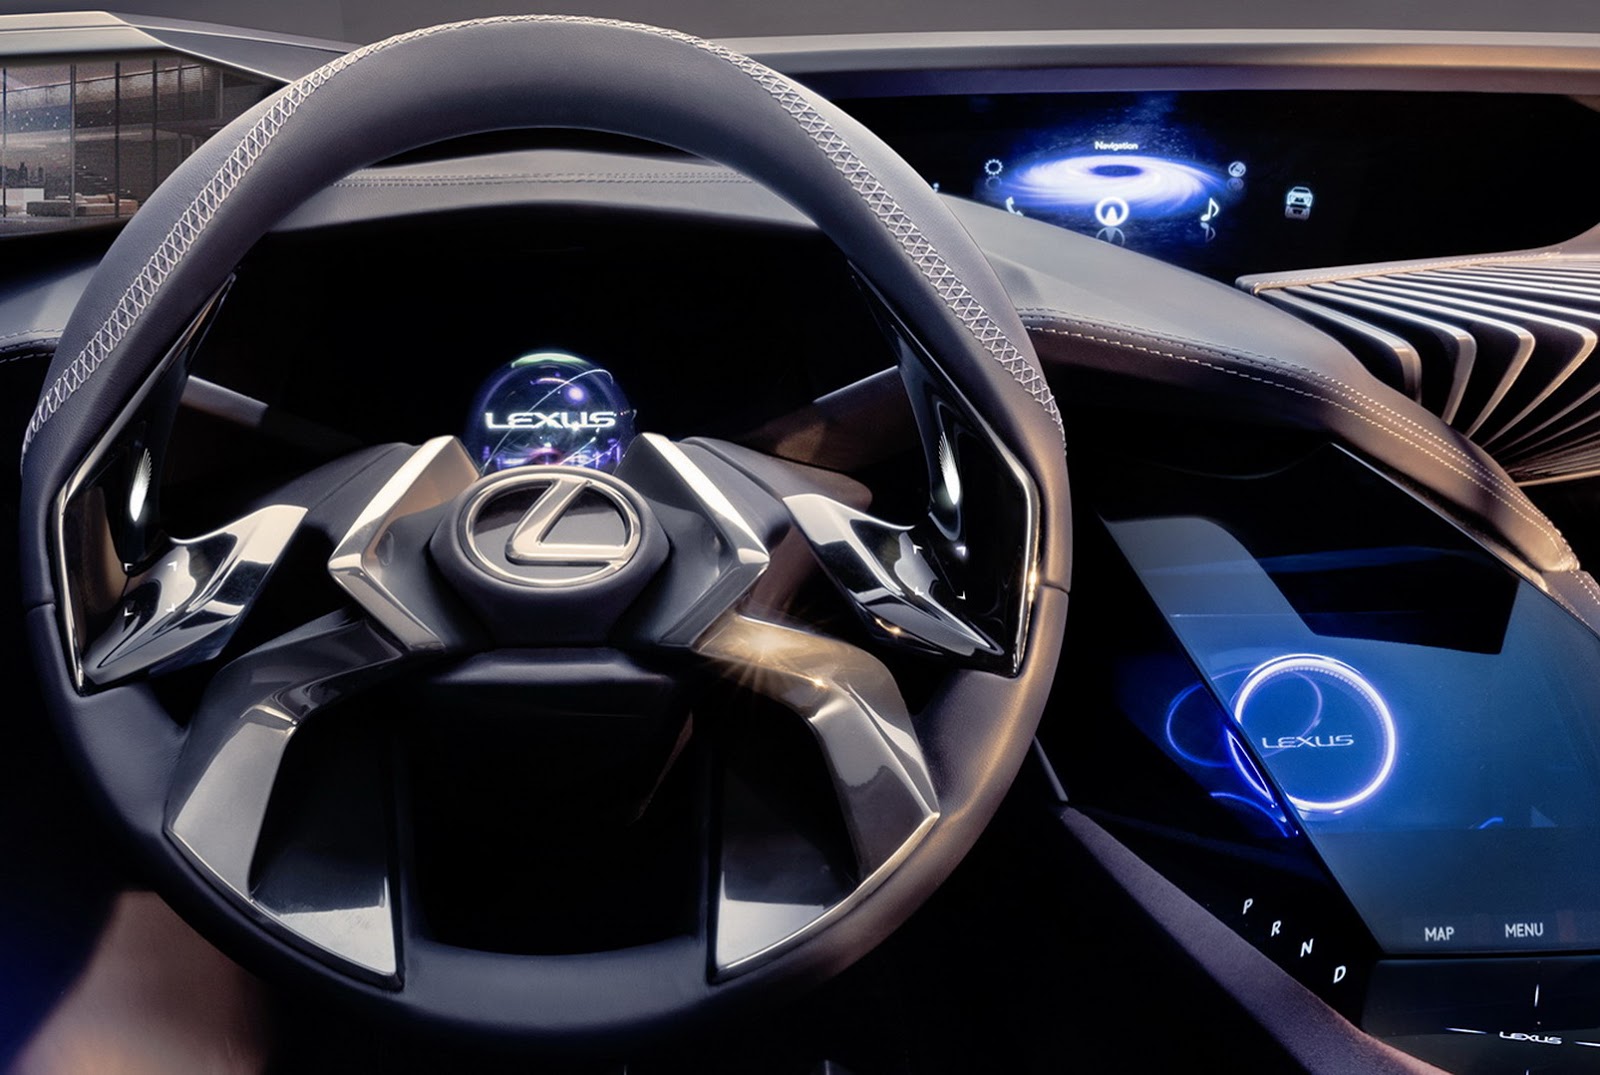 "لكزس" تكشف عن قمرة UX كونسيبت الجديدة بتقنيات الهولوجرام ثلاثي الأبعاد Lexus 6